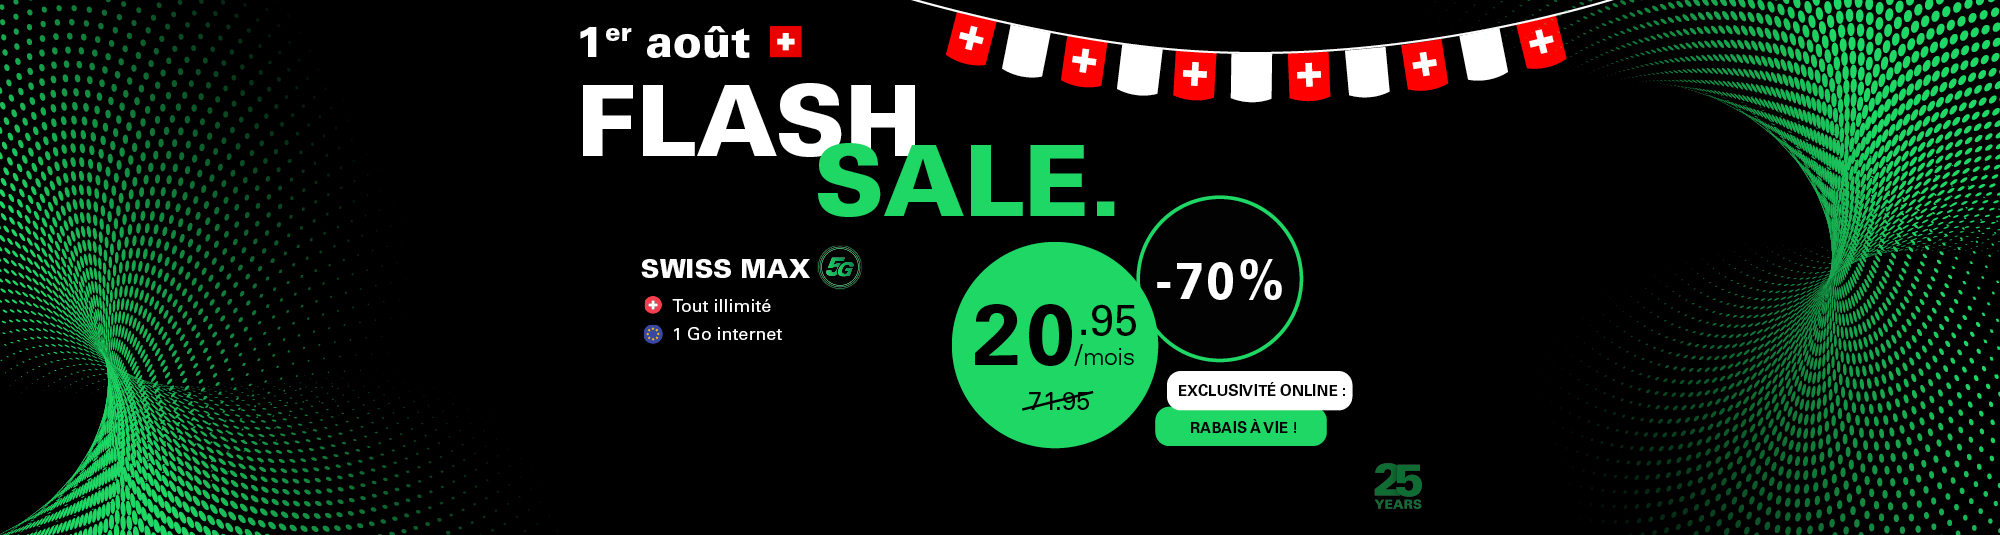 Fond noir avec texte blanc et vert : Flash sale. Swiss Max 20.95/mois au lieu de 71.95, Salt Mobile